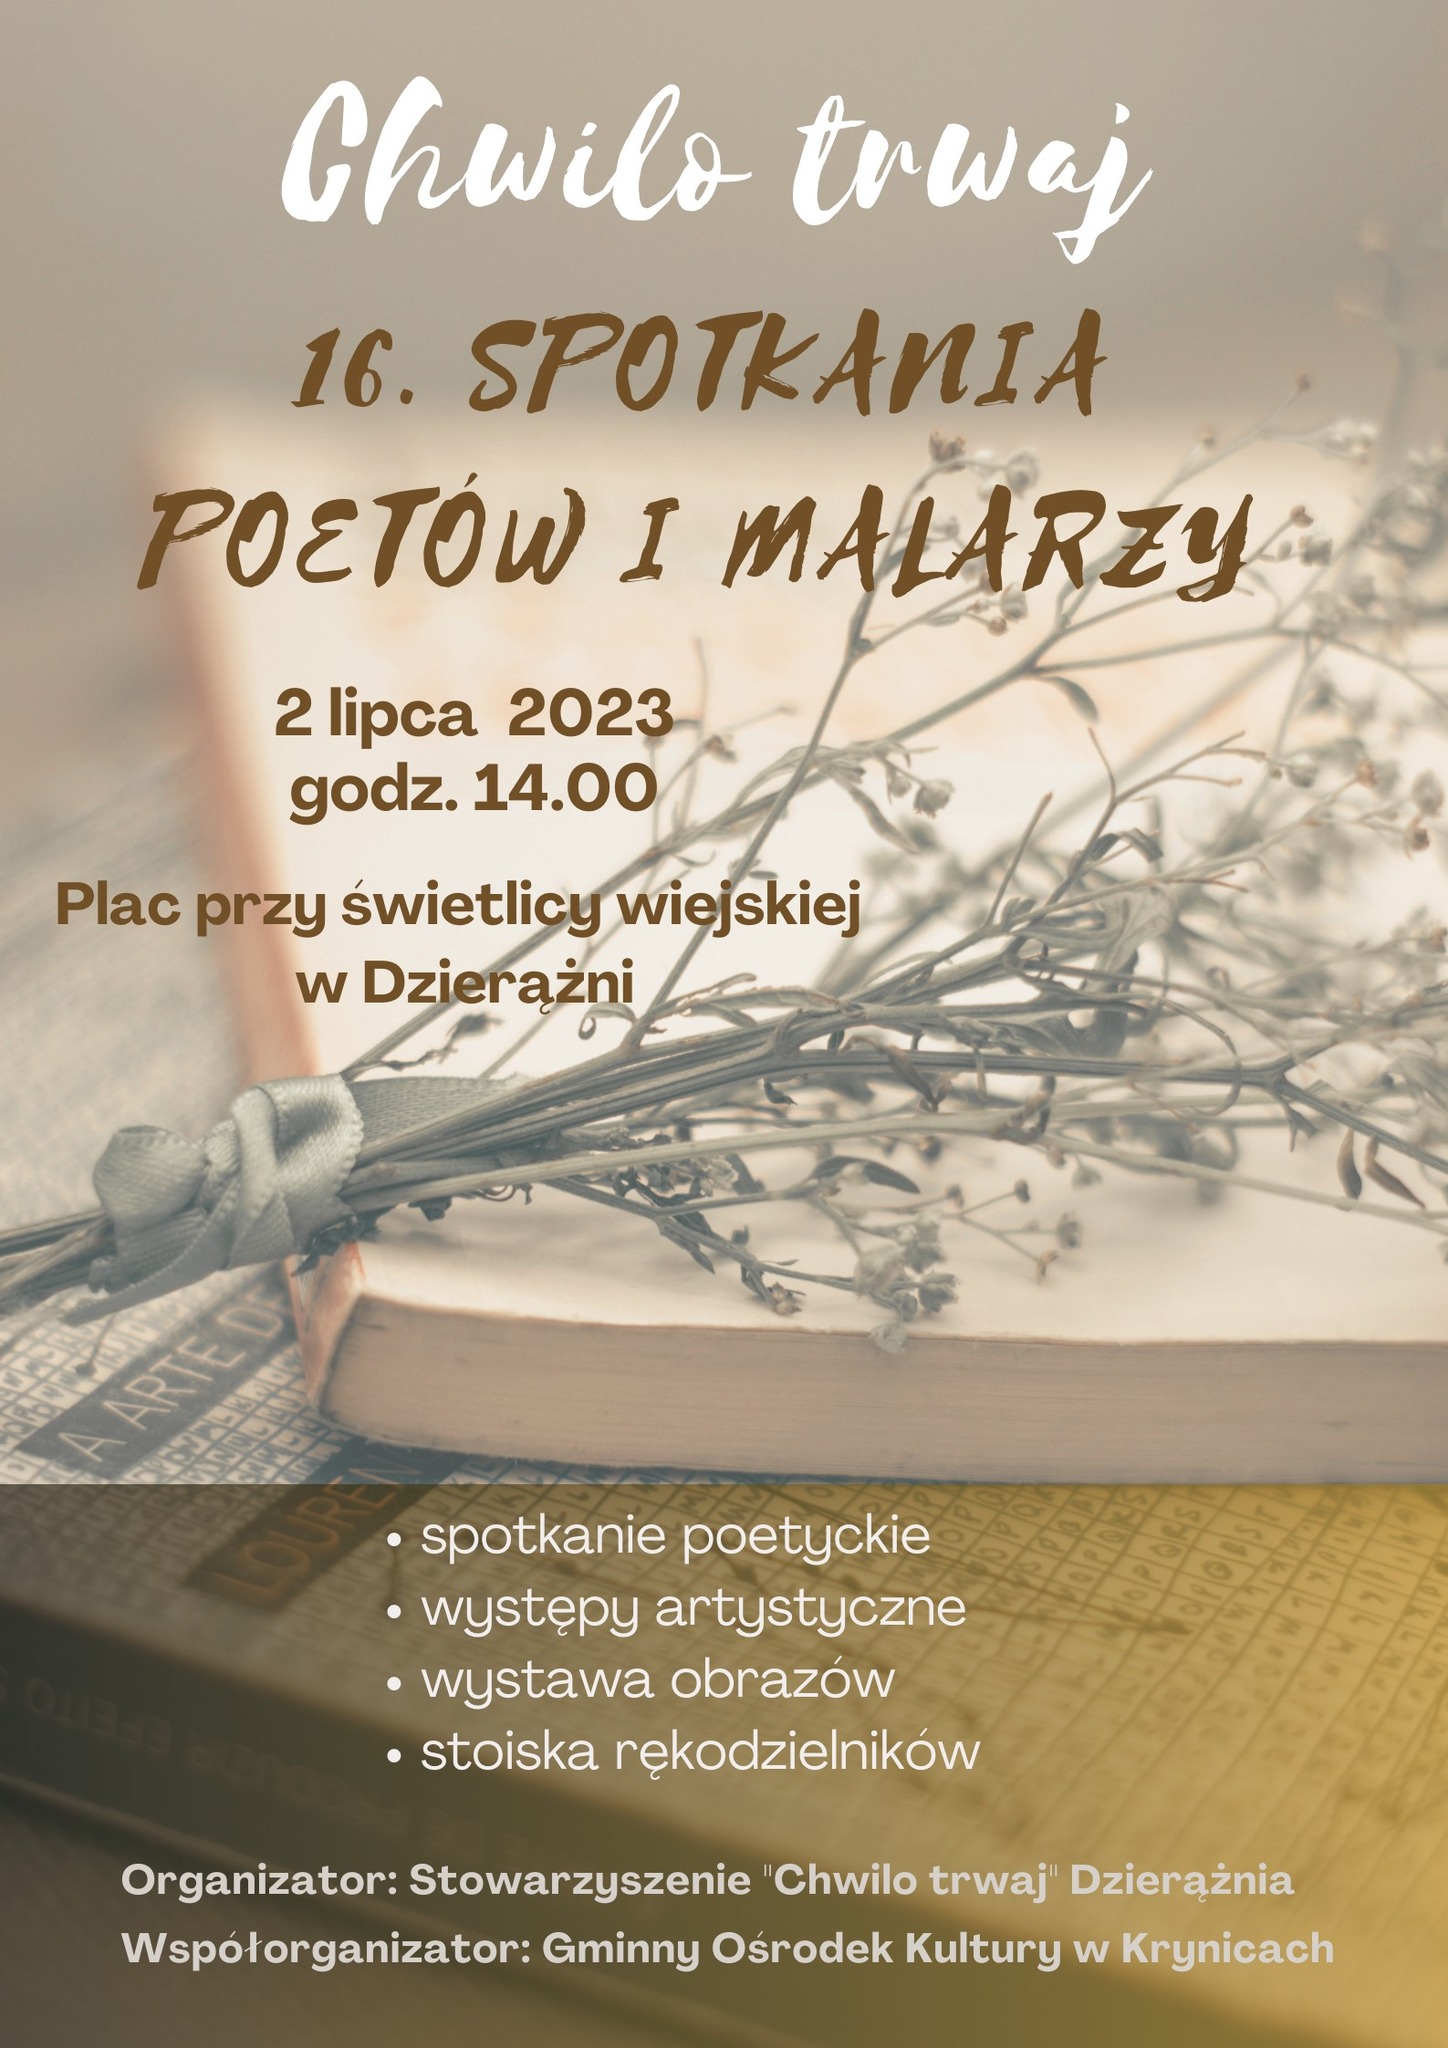 Spotkania Poetów i Malarzy w Dzierążni